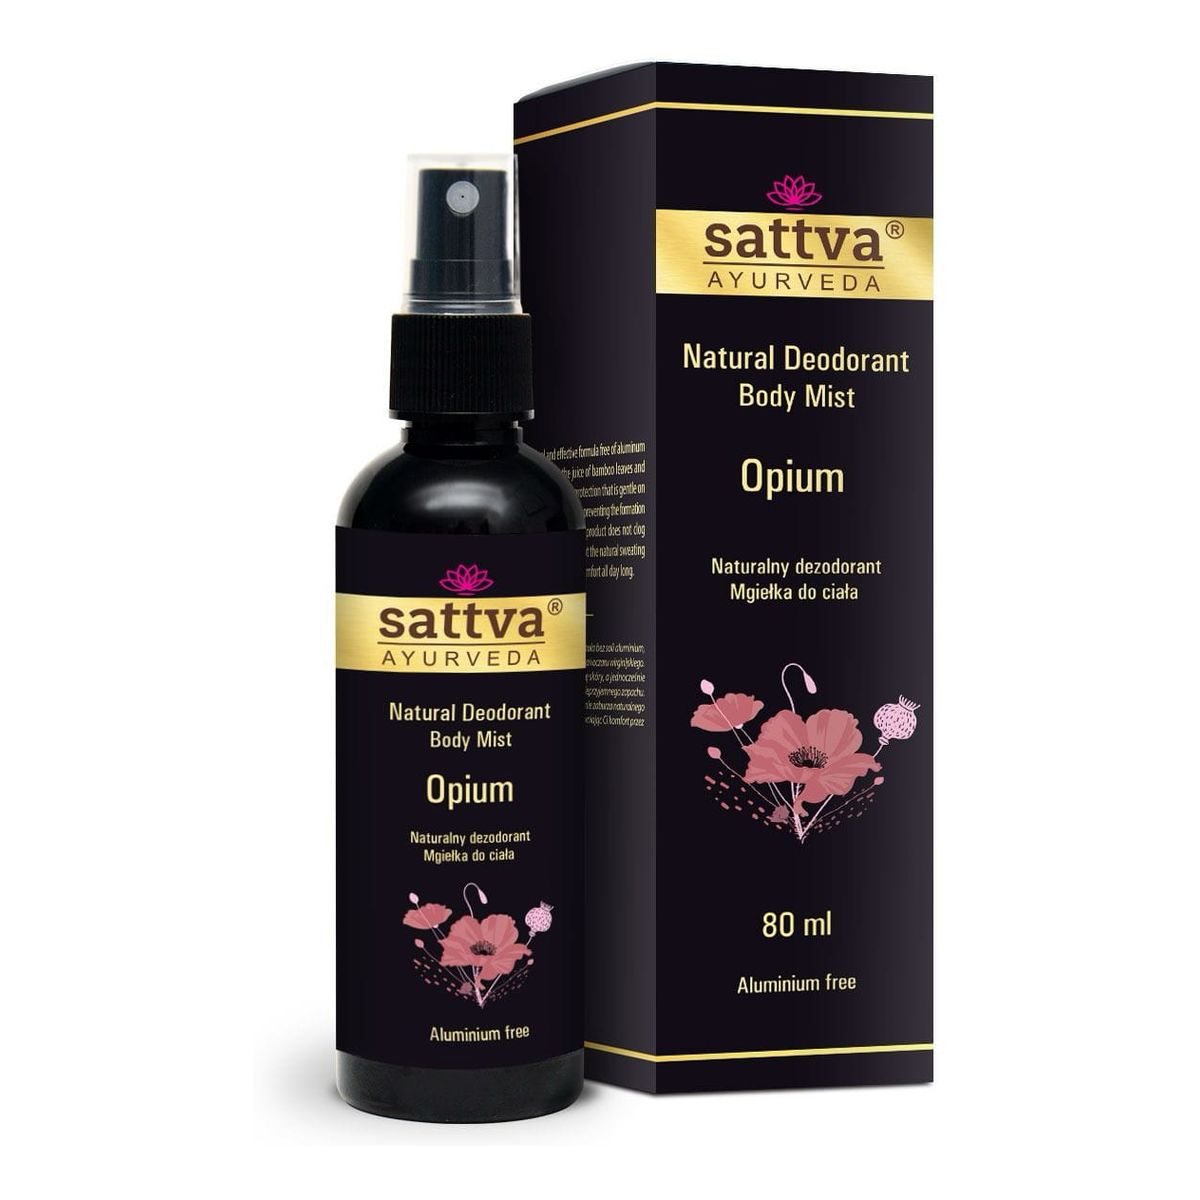 Sattva Natural Deodorant Body Mist naturalny Dezodorant w formie mgiełki do ciała opium 80ml